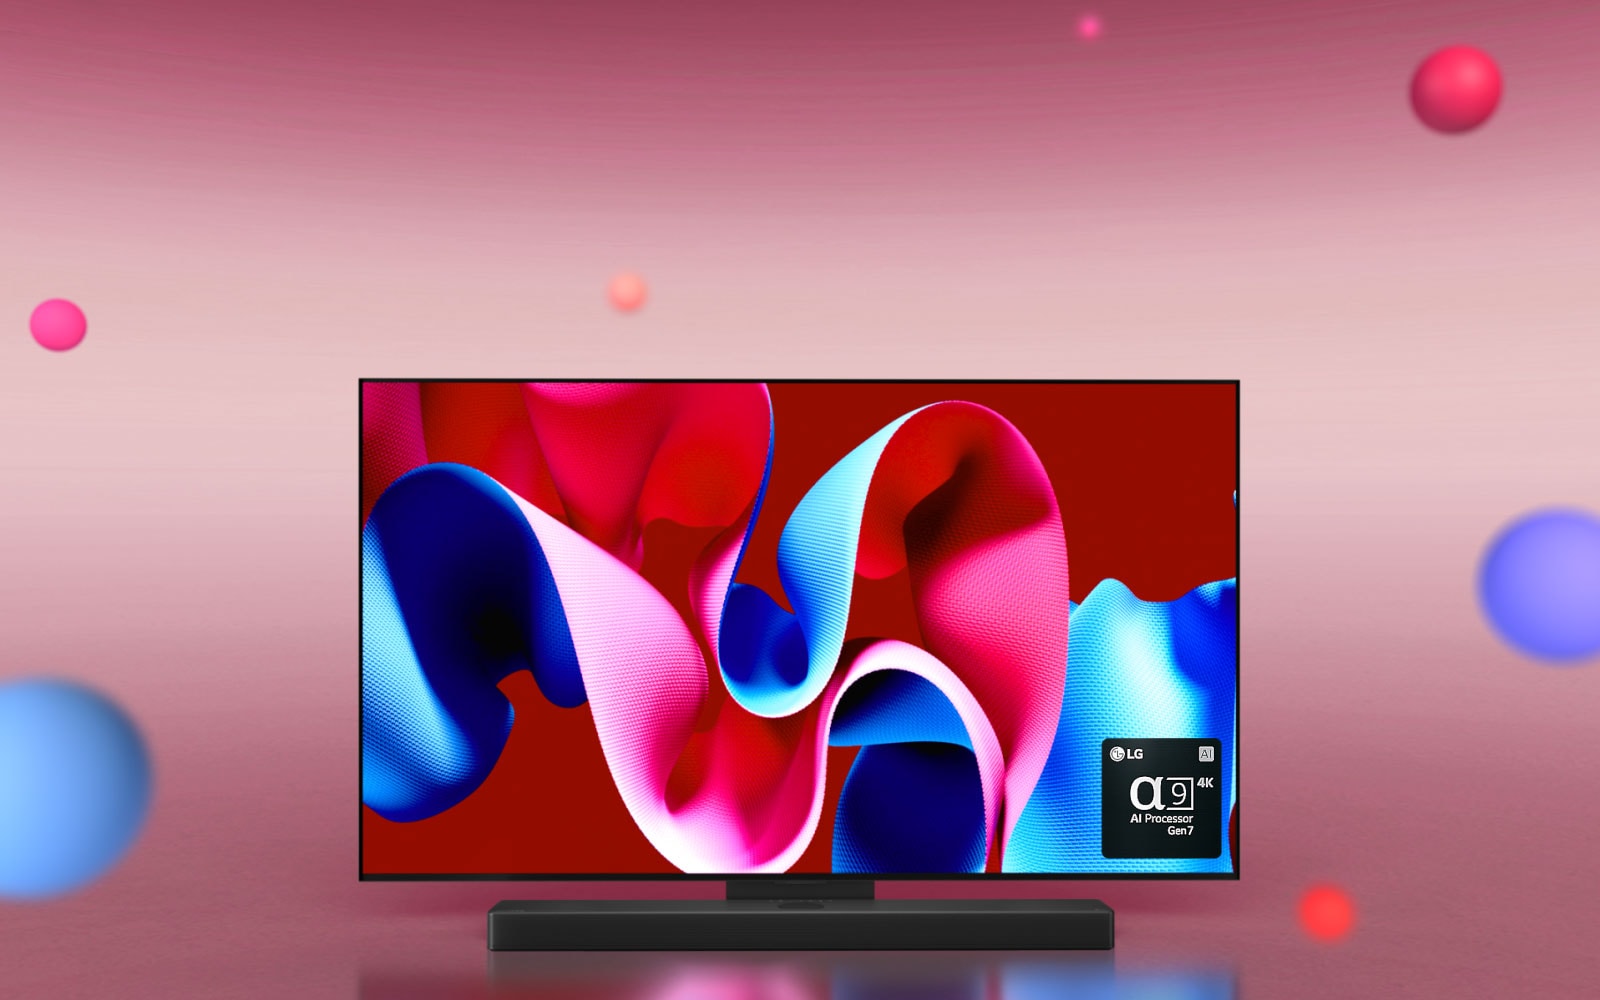 LG OLED C4 en LG Soundbar zijn 45 graden naar rechts gericht met een roze en blauw abstract kunstwerk op het scherm tegen een roze achtergrond met 3D-bollen. De OLED TV en LG Soundbar draaien naar de voorkant. Rechts onderin is een logo van LG alpha 9 AI-processor Gen7.